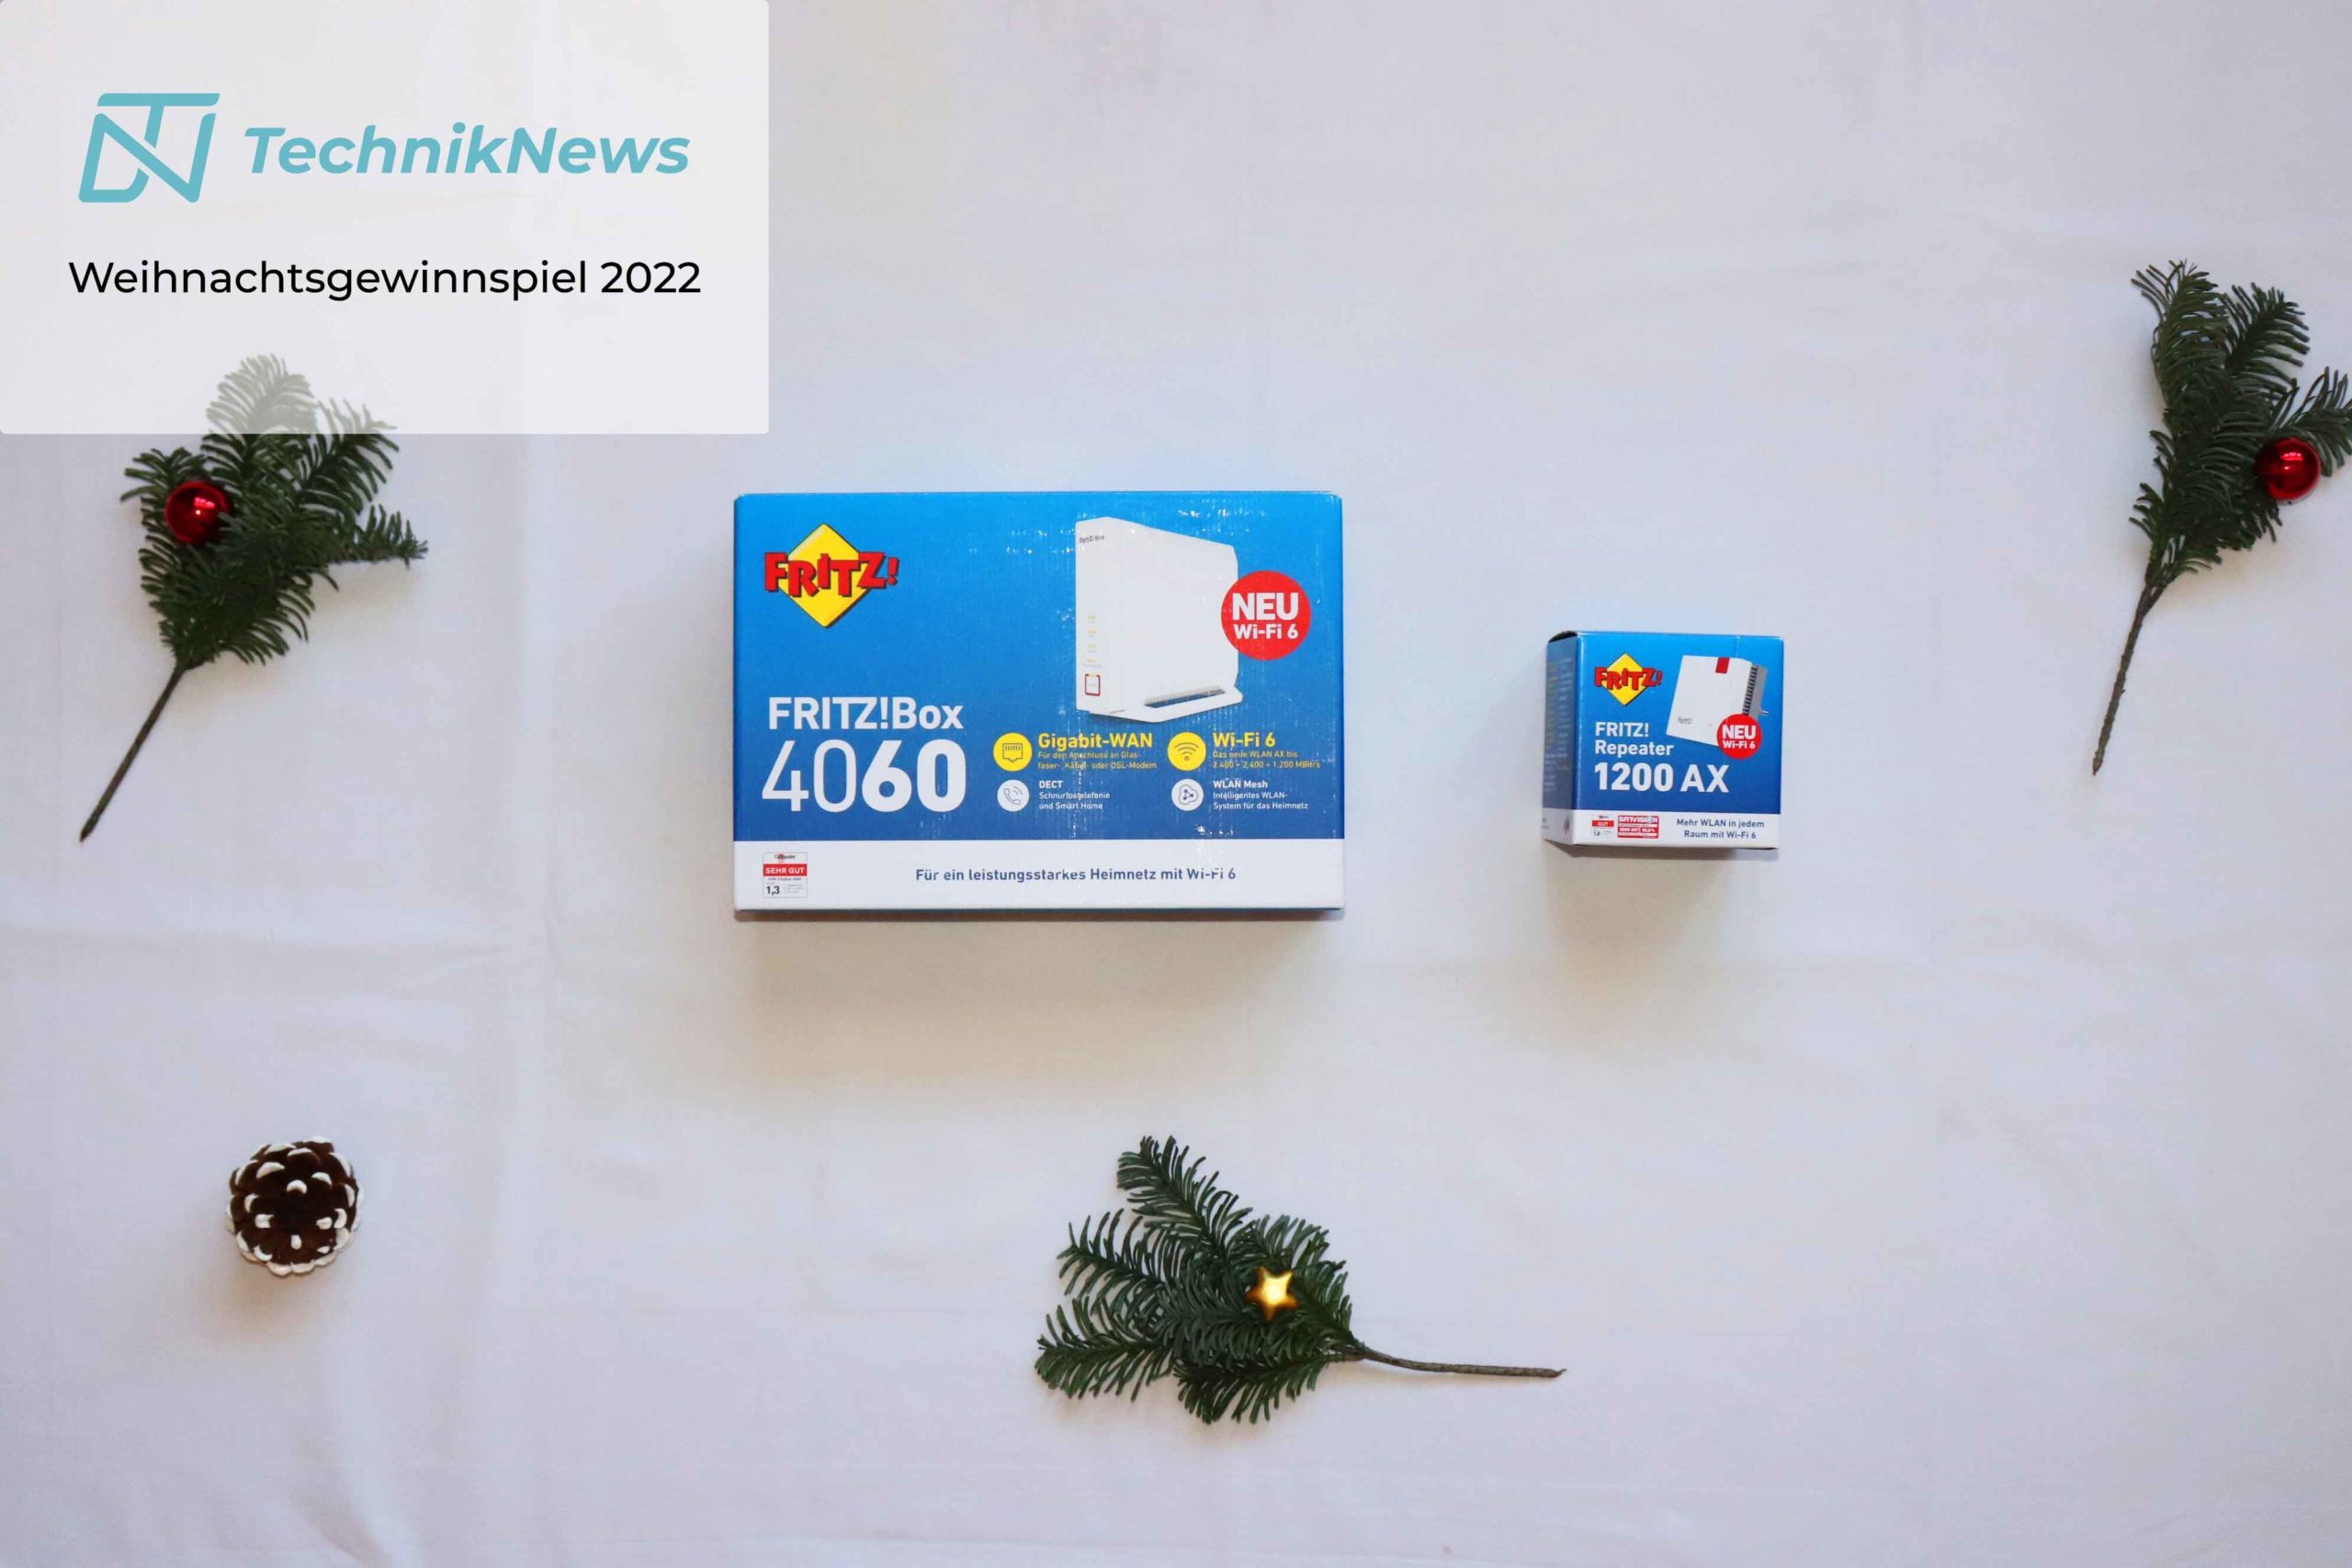 TechnikNews Weihnachtsgewinnspiel 2022 Fritzbox 4060 Fritzrepeater 1200 AX